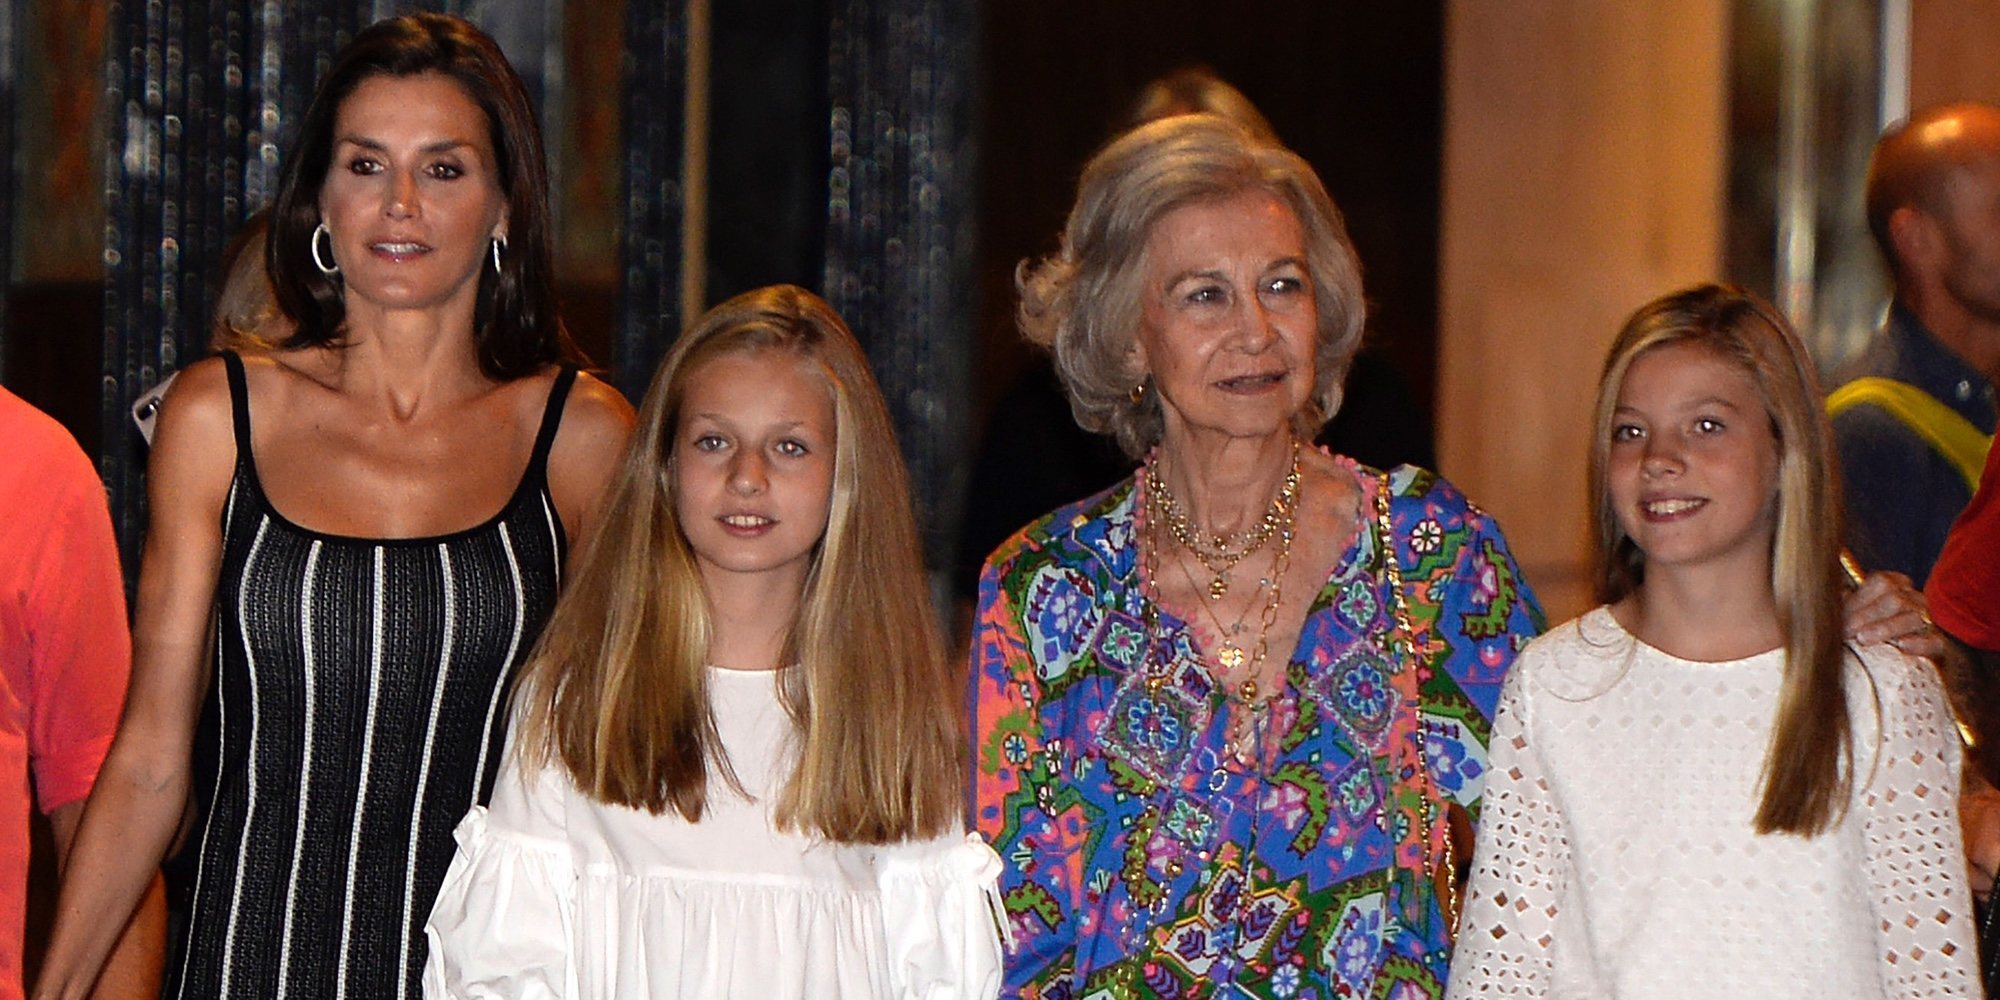 El plan cultural sin privilegios de la Reina Letizia, la Reina Sofía, la Princesa Leonor y la Infanta Sofía en Palma